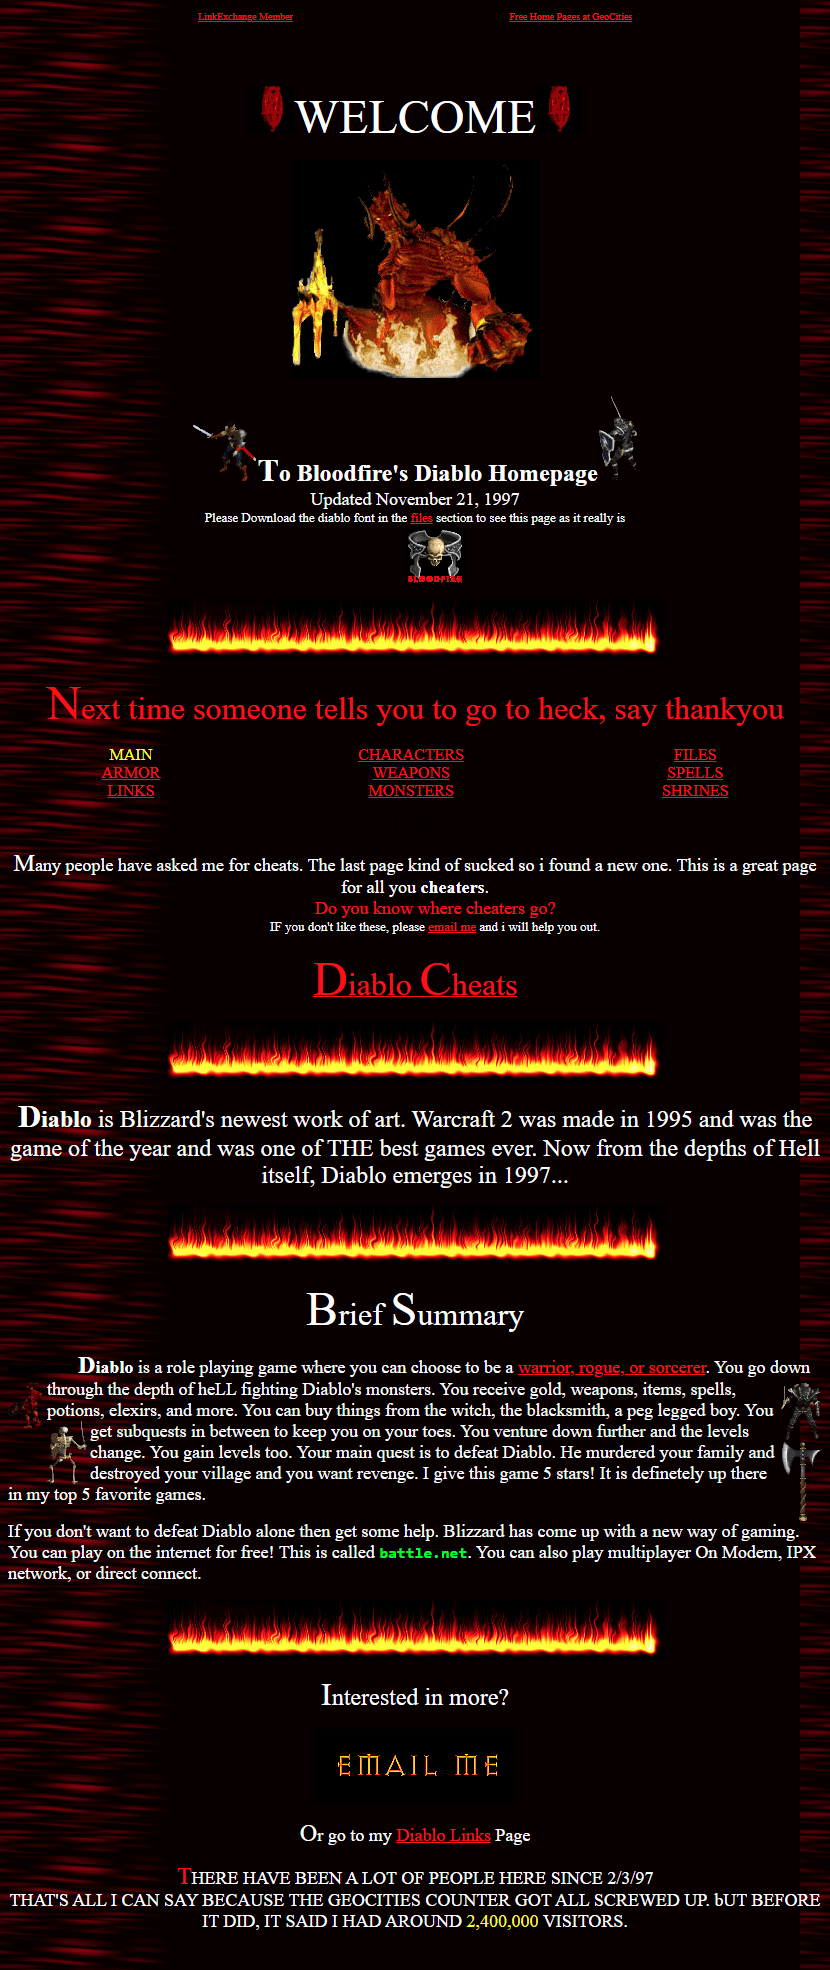 Bloodfire's Diablo Homepage in 1997